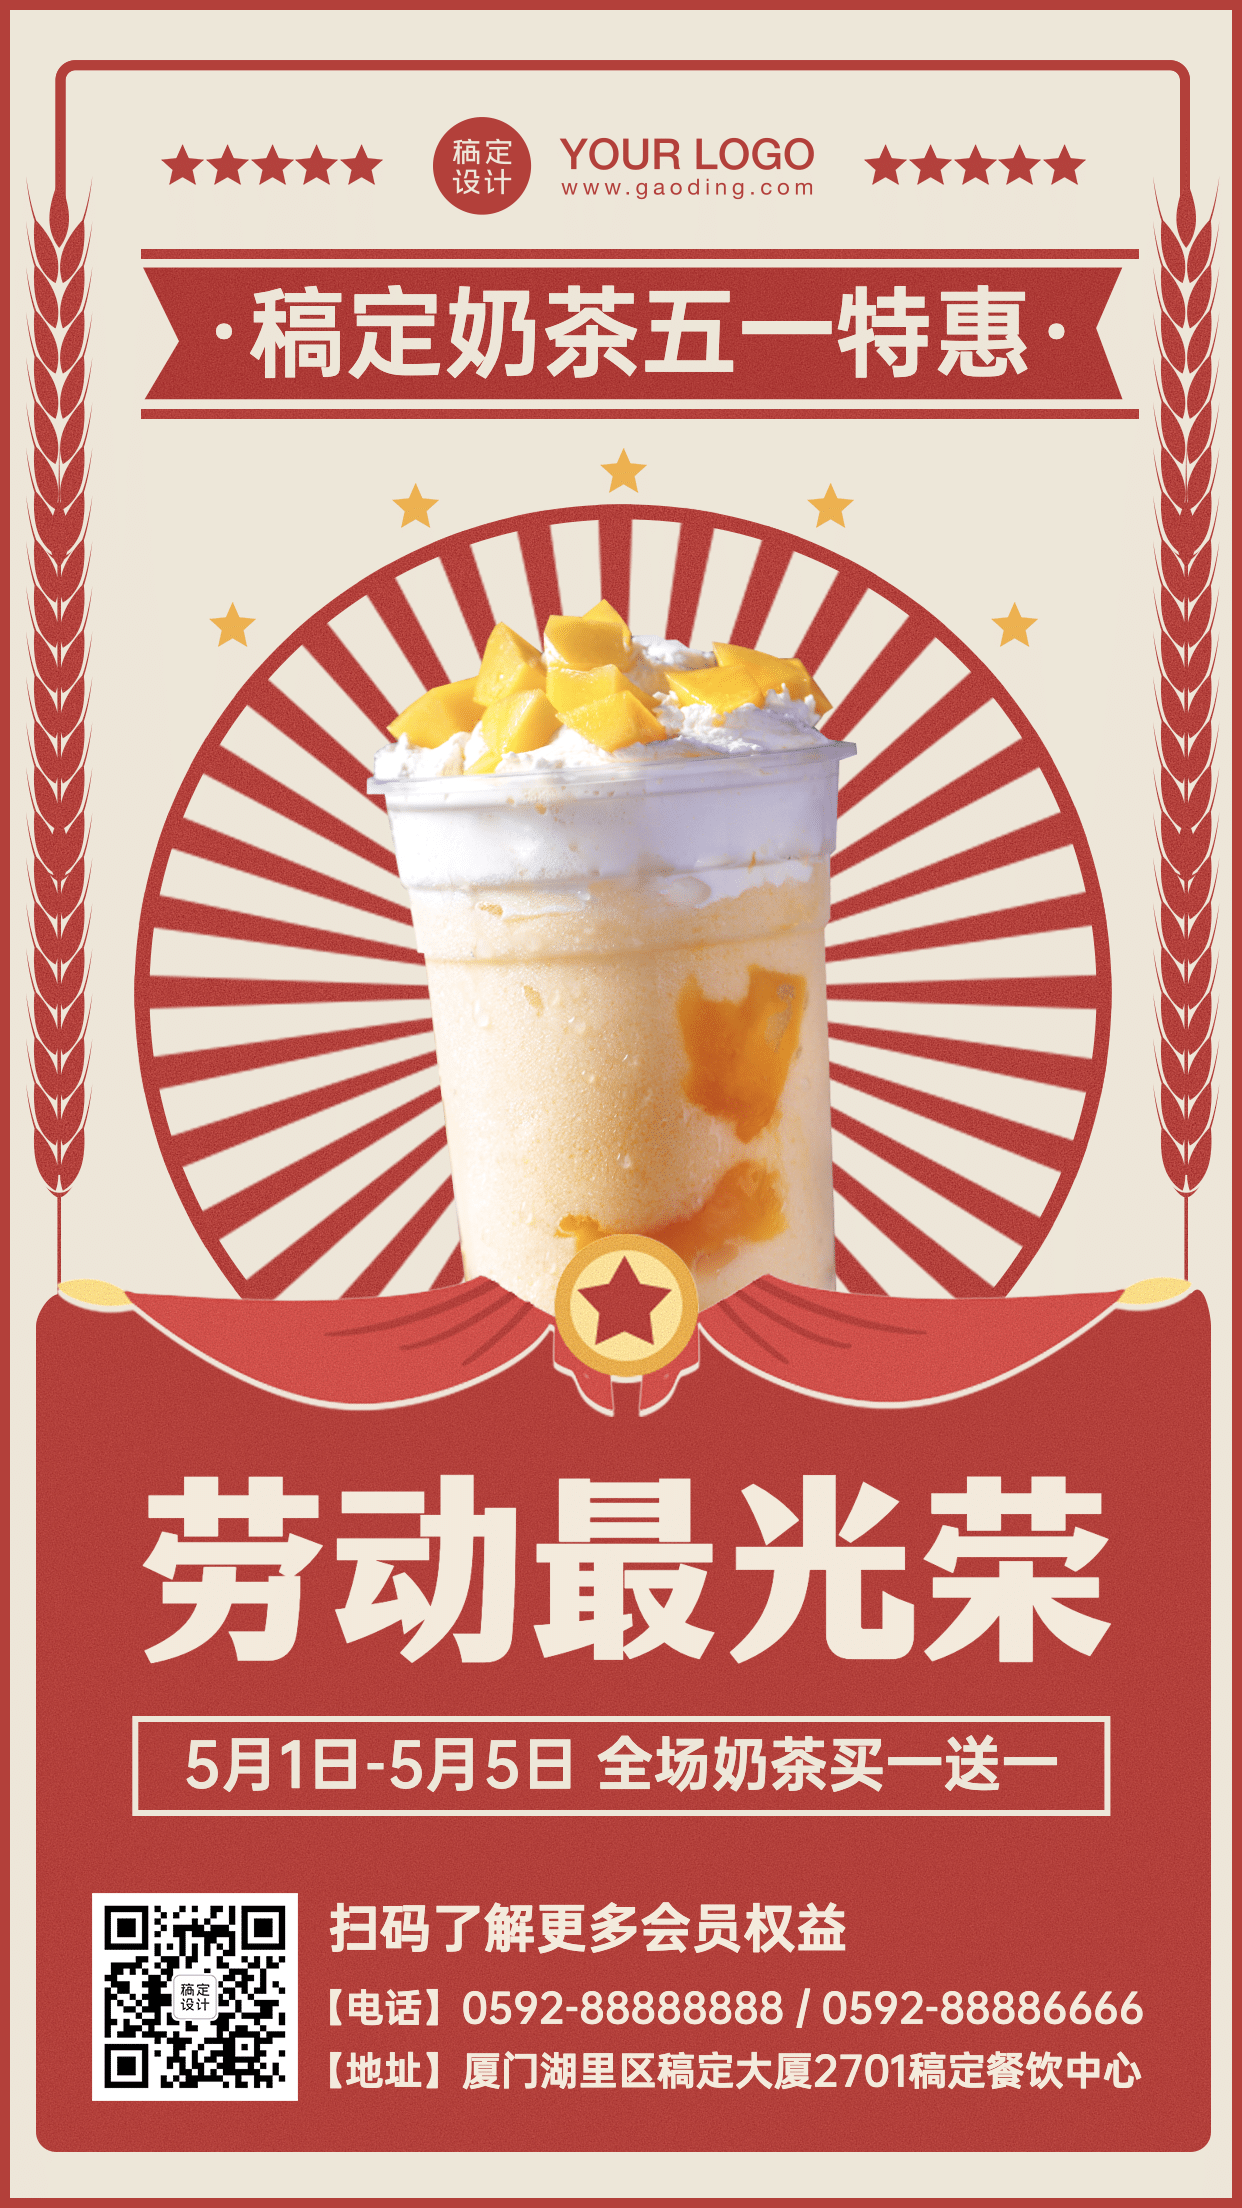 劳动节餐饮奶茶促销活动海报预览效果